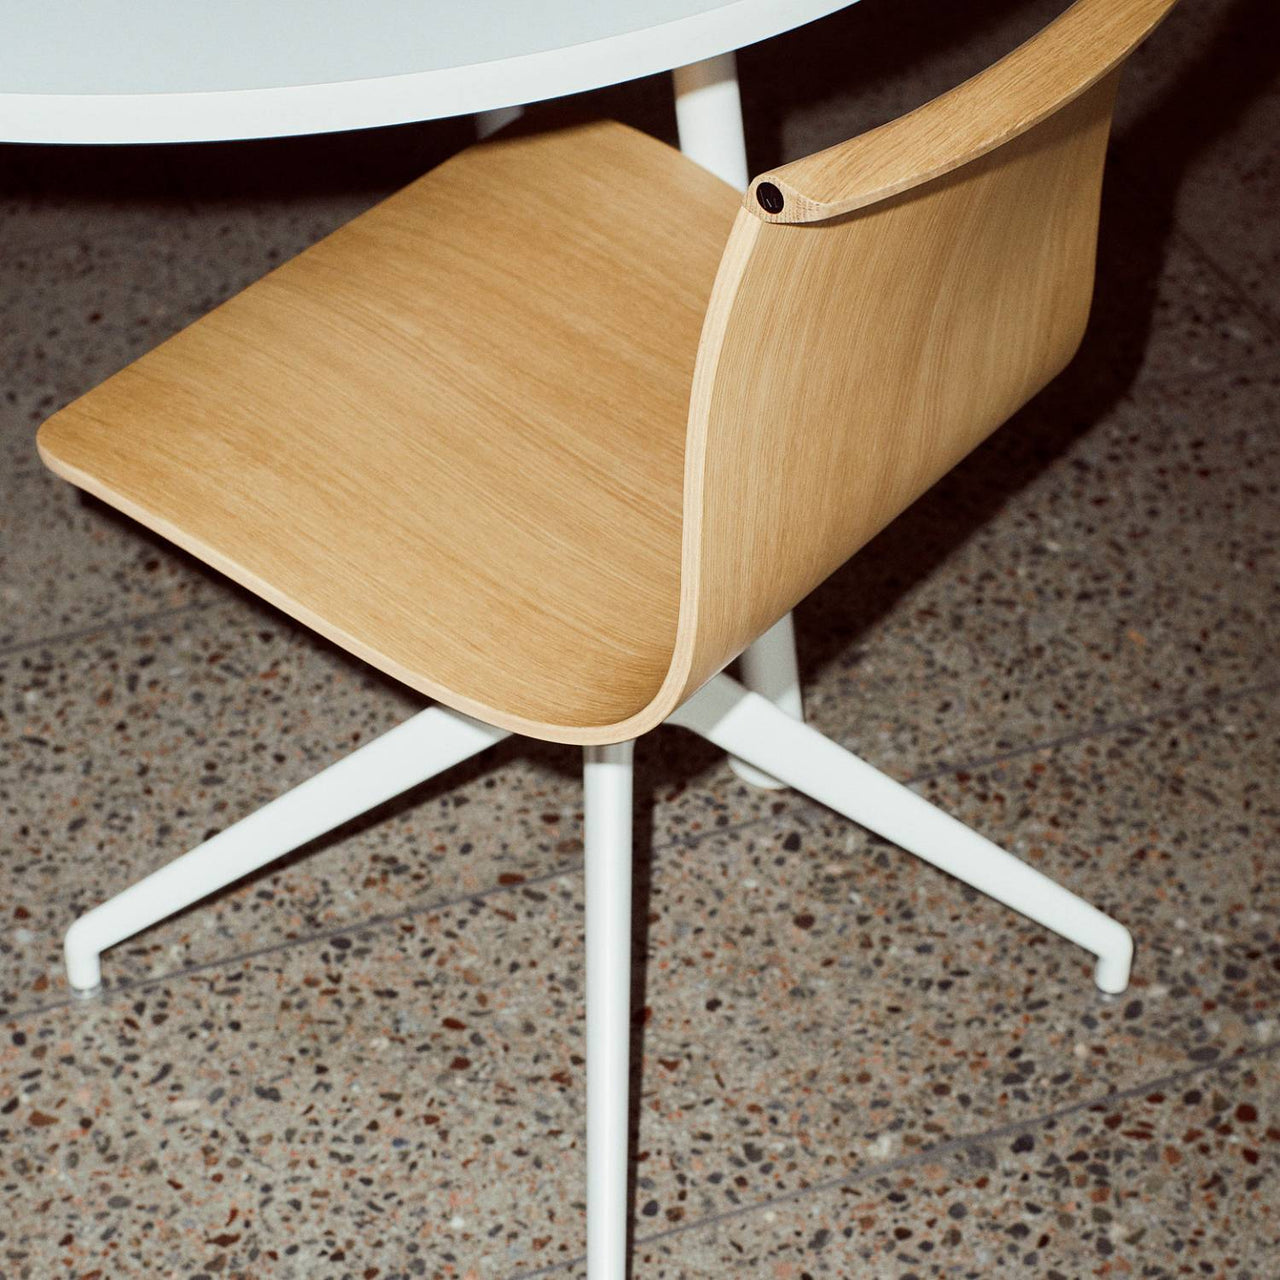 Serif Chair: 4 Star Base